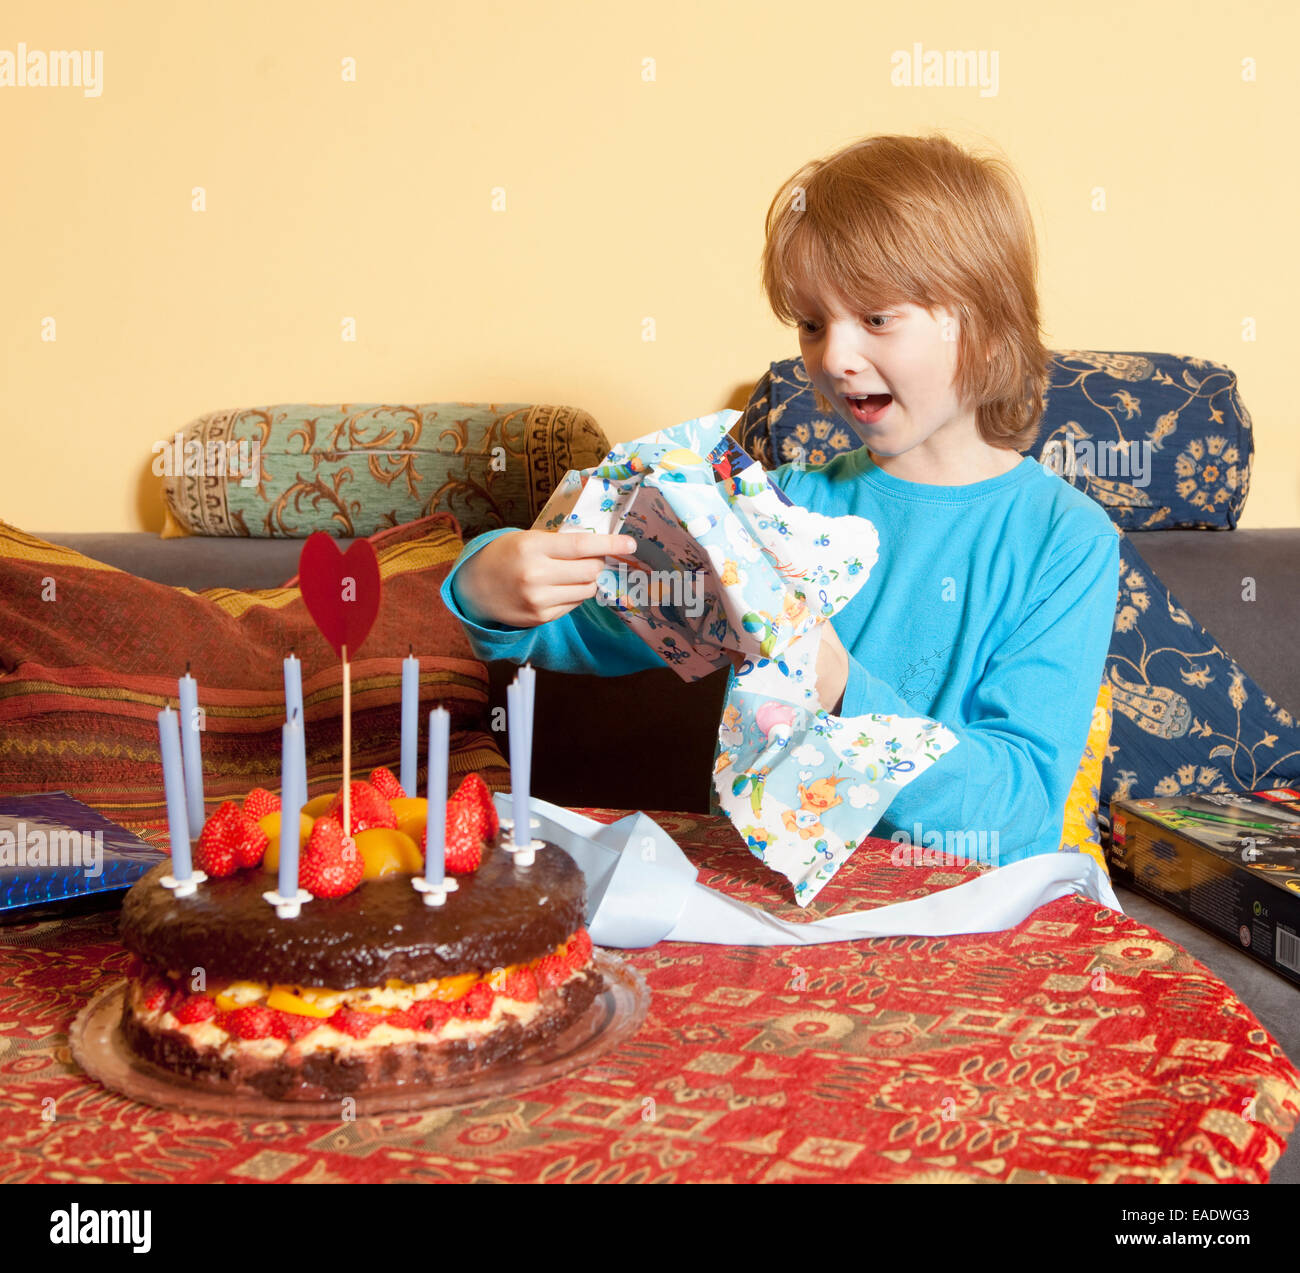 Junge mit blonden Haaren öffnet seine Geburtstagsgeschenke Stockfoto